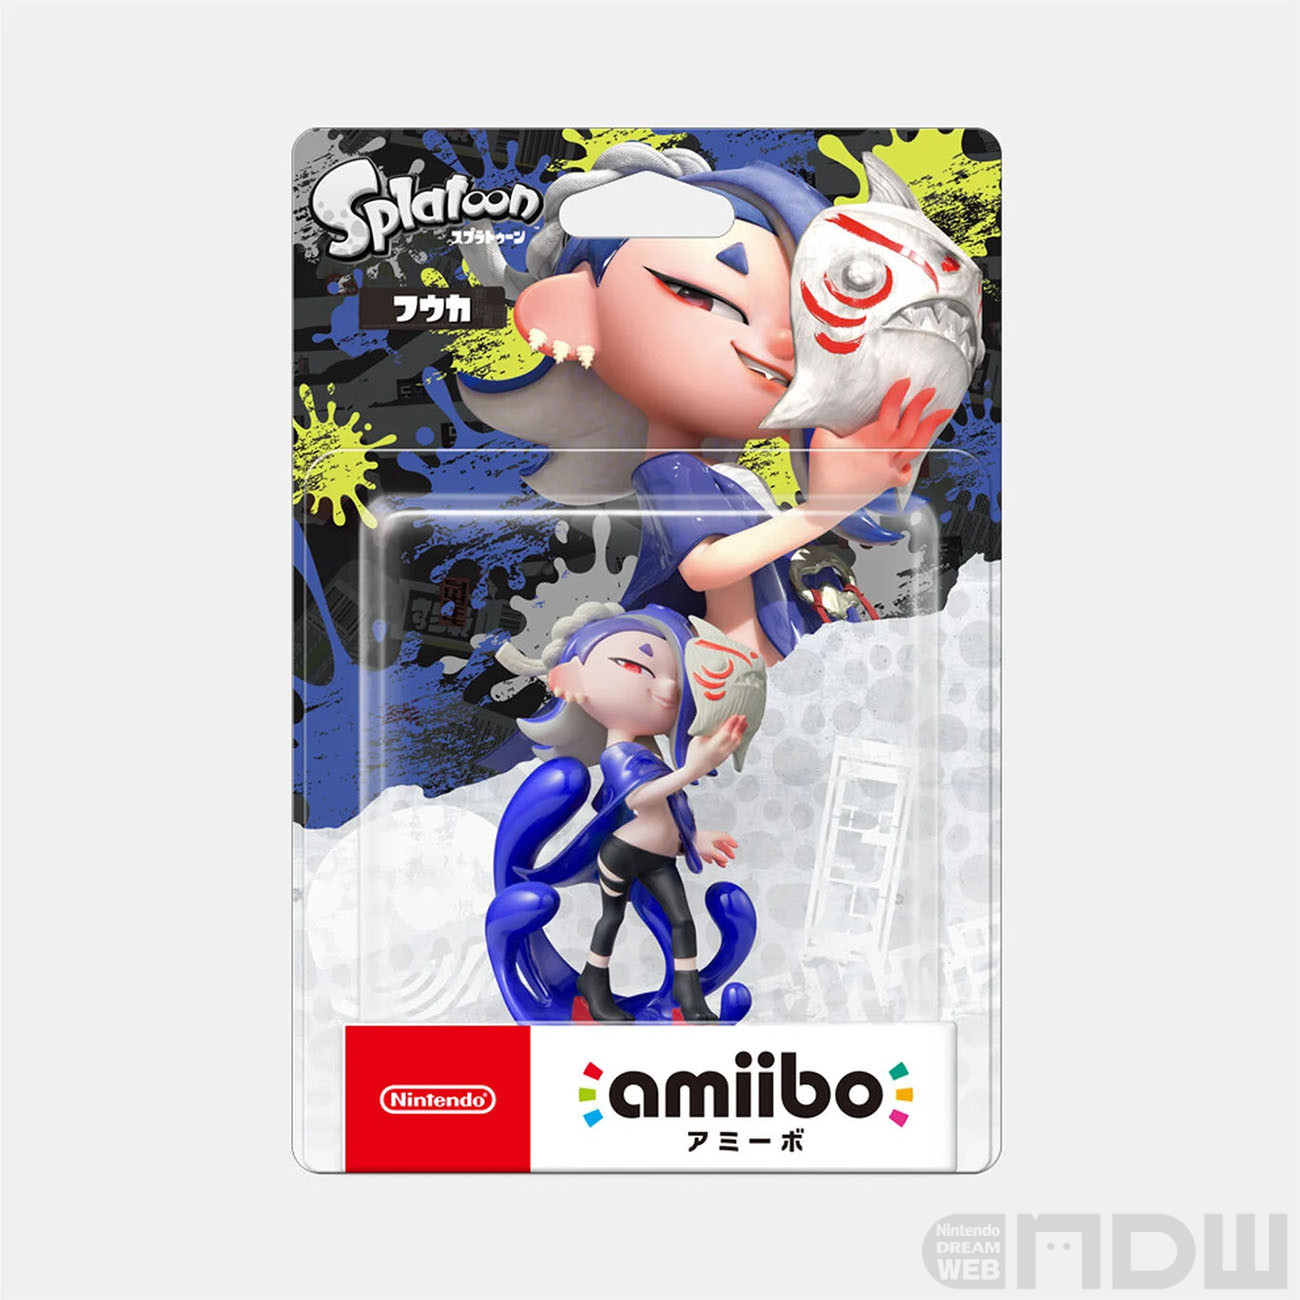 『スプラトゥーン3』すりみ連合のamiiboが11月17日発売決定！ – Nintendo DREAM WEB